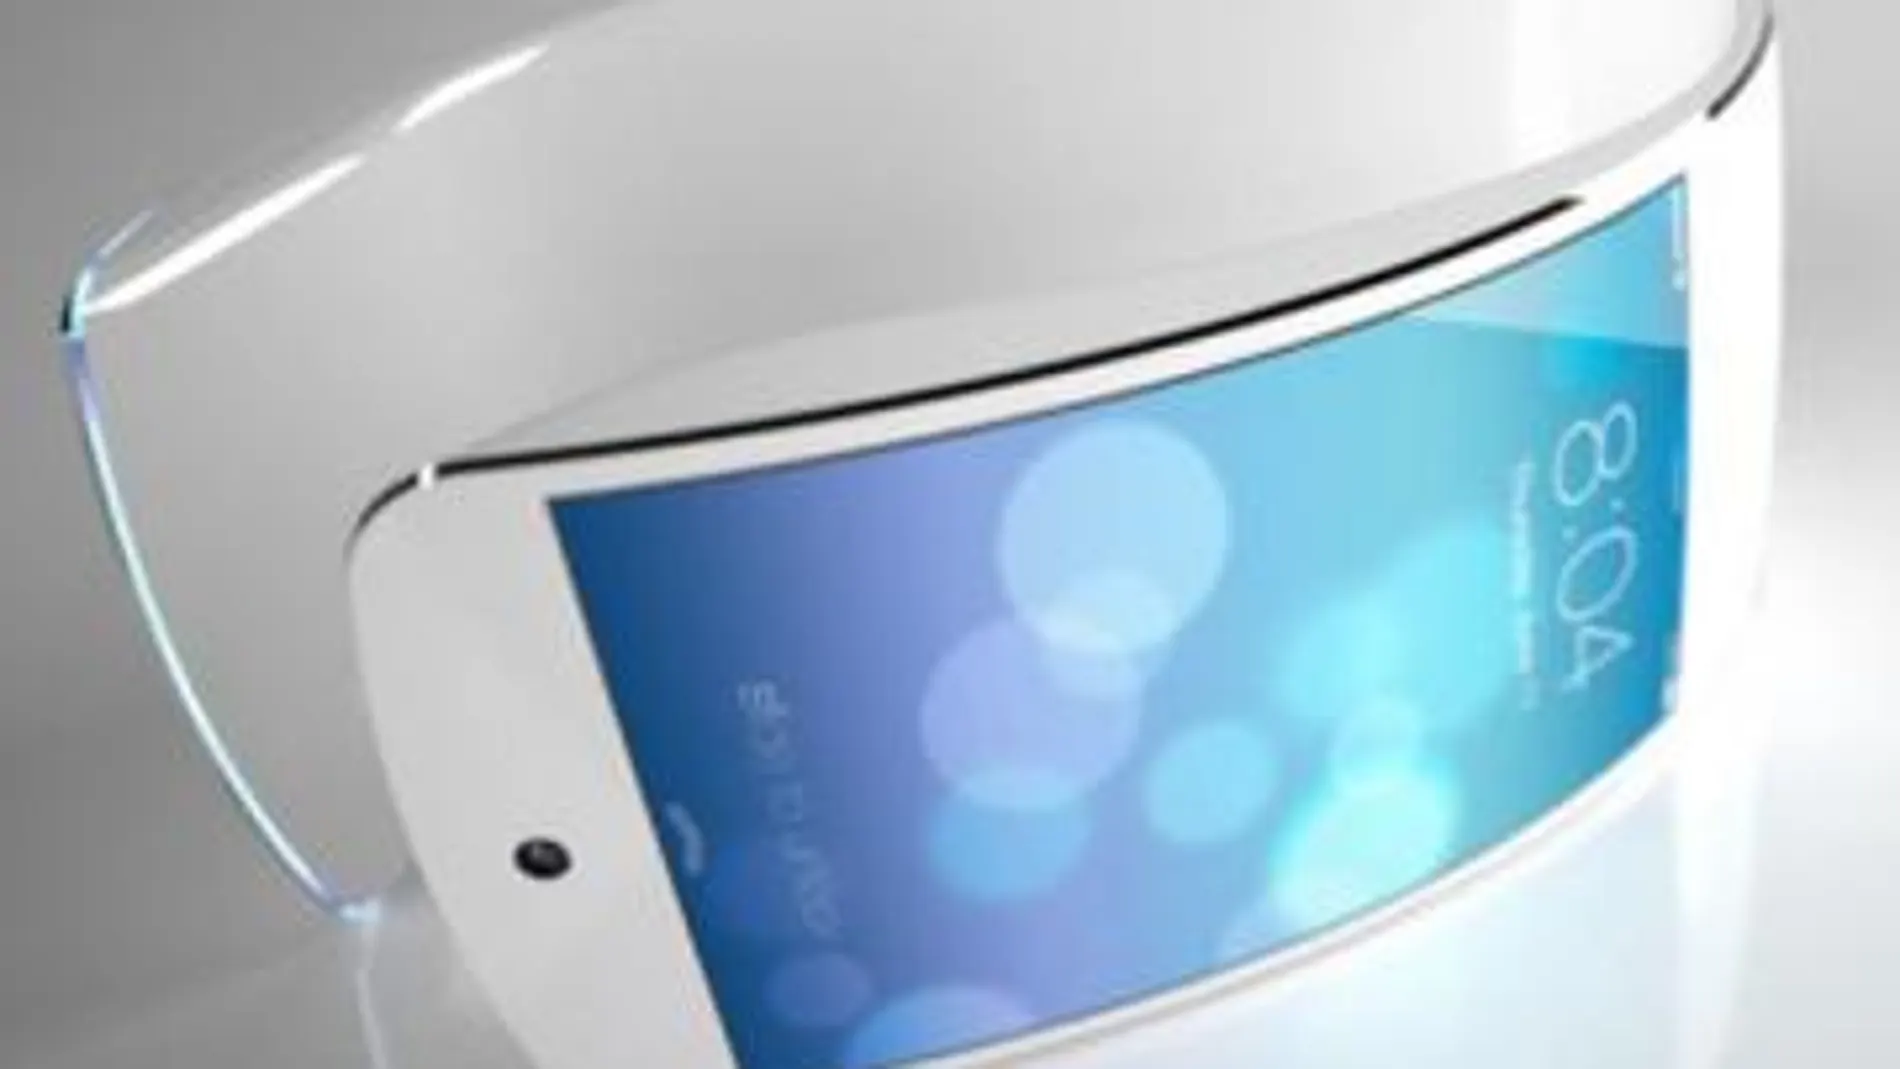 El iWatch de Apple podría tener una pantalla de 1,52 pulgadas fabricada por LG